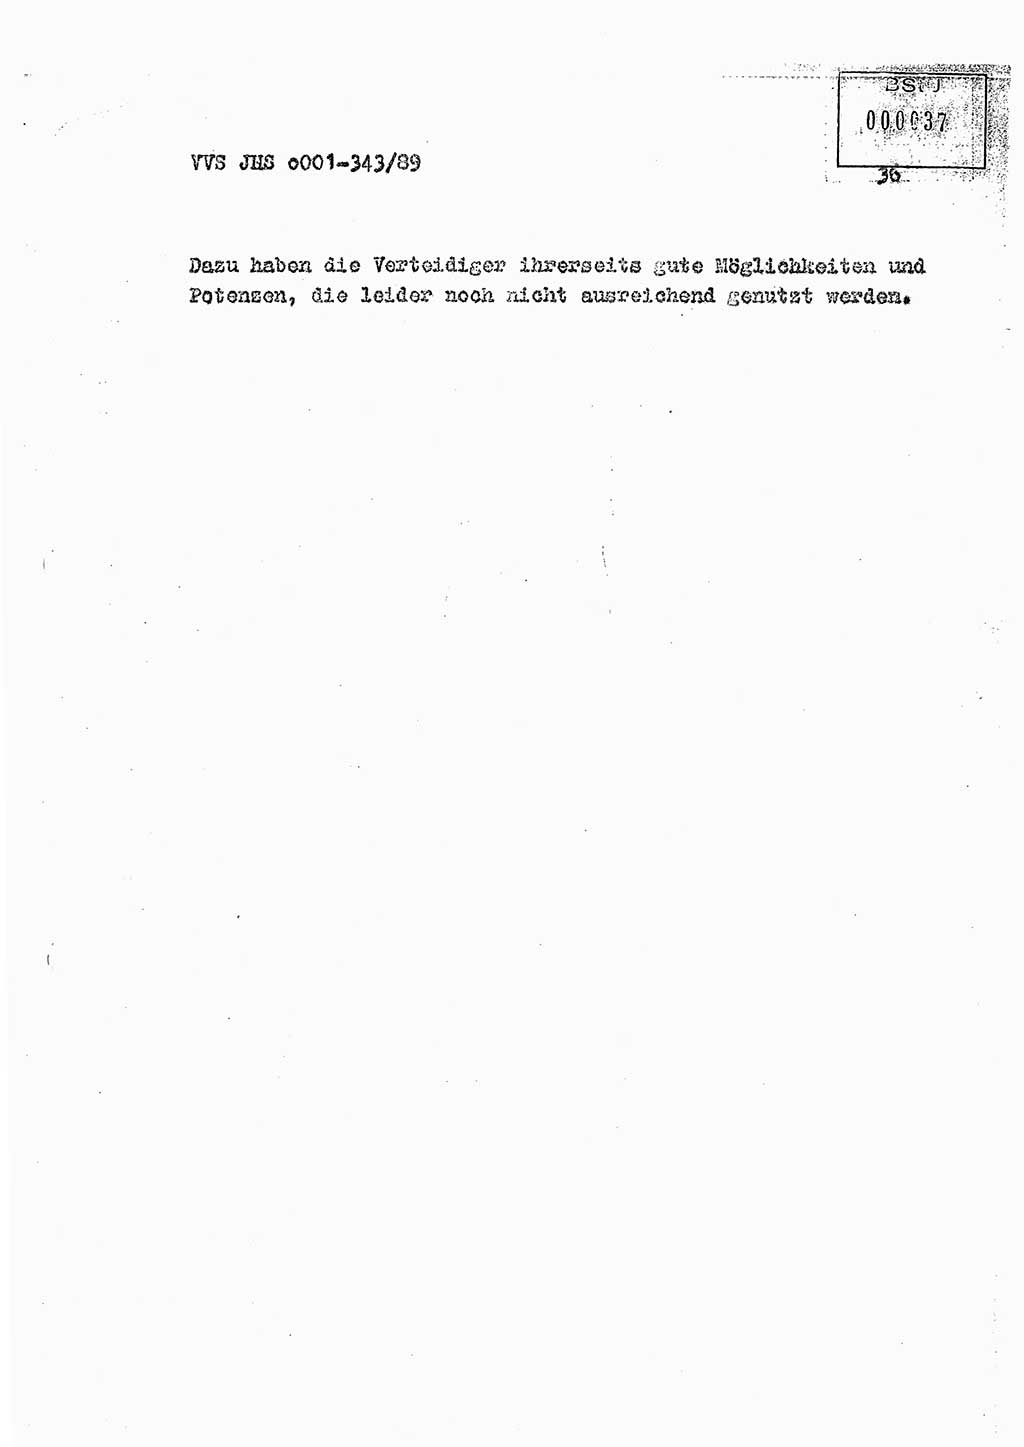 Diplomarbeit Offiziersschüler Axel Henschke (HA Ⅸ/9), Ministerium für Staatssicherheit (MfS) [Deutsche Demokratische Republik (DDR)], Juristische Hochschule (JHS), Vertrauliche Verschlußsache (VVS) o001-343/89, Potsdam 1989, Seite 36 (Dipl.-Arb. MfS DDR JHS VVS o001-343/89 1989, S. 36)